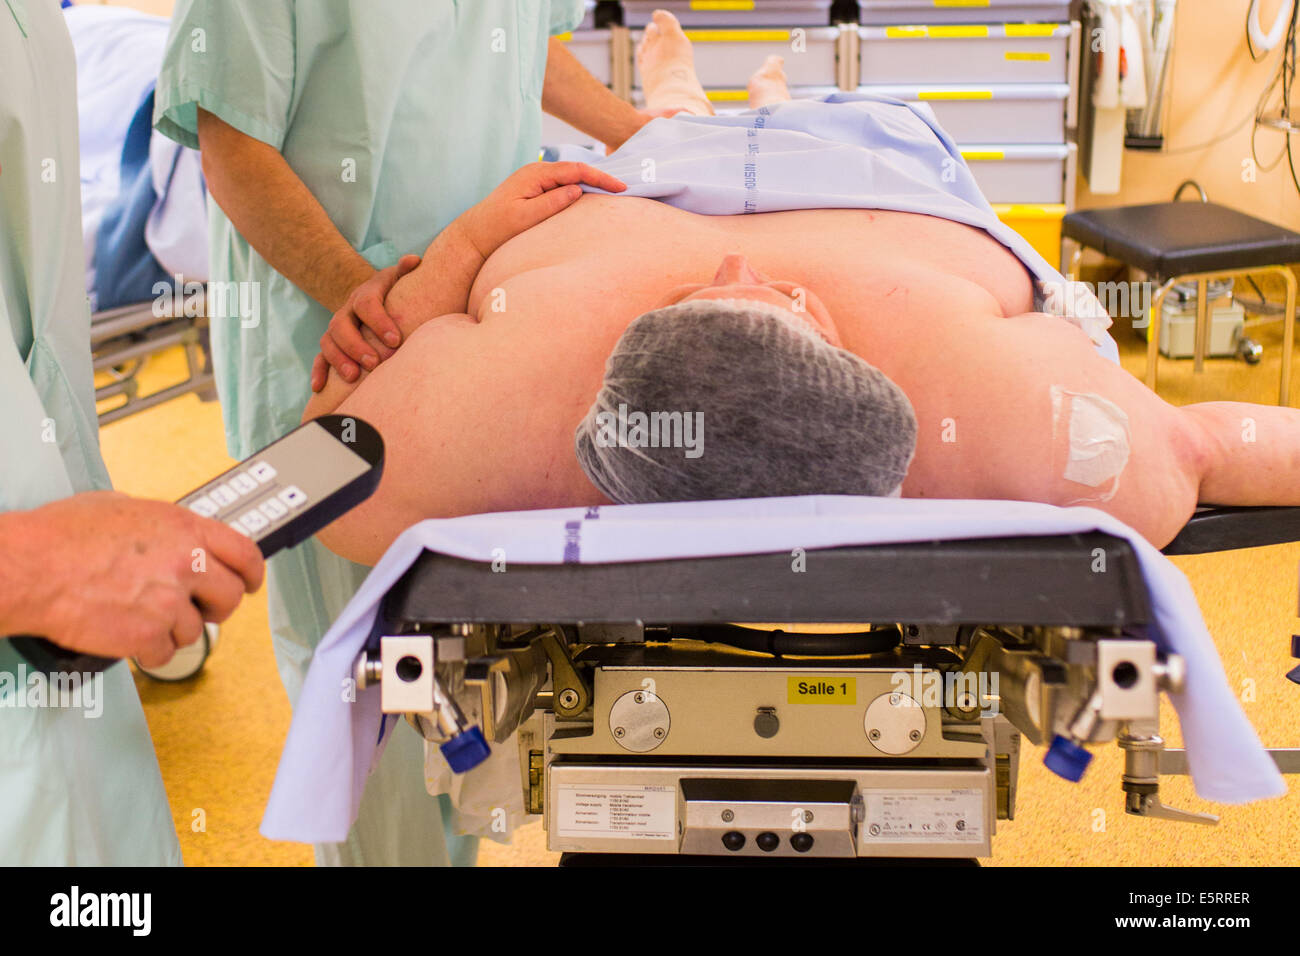 Adipösen Patientin vor der laparoskopischen Sleeve-Gastrektomie, Limoges Krankenhaus. Stockfoto